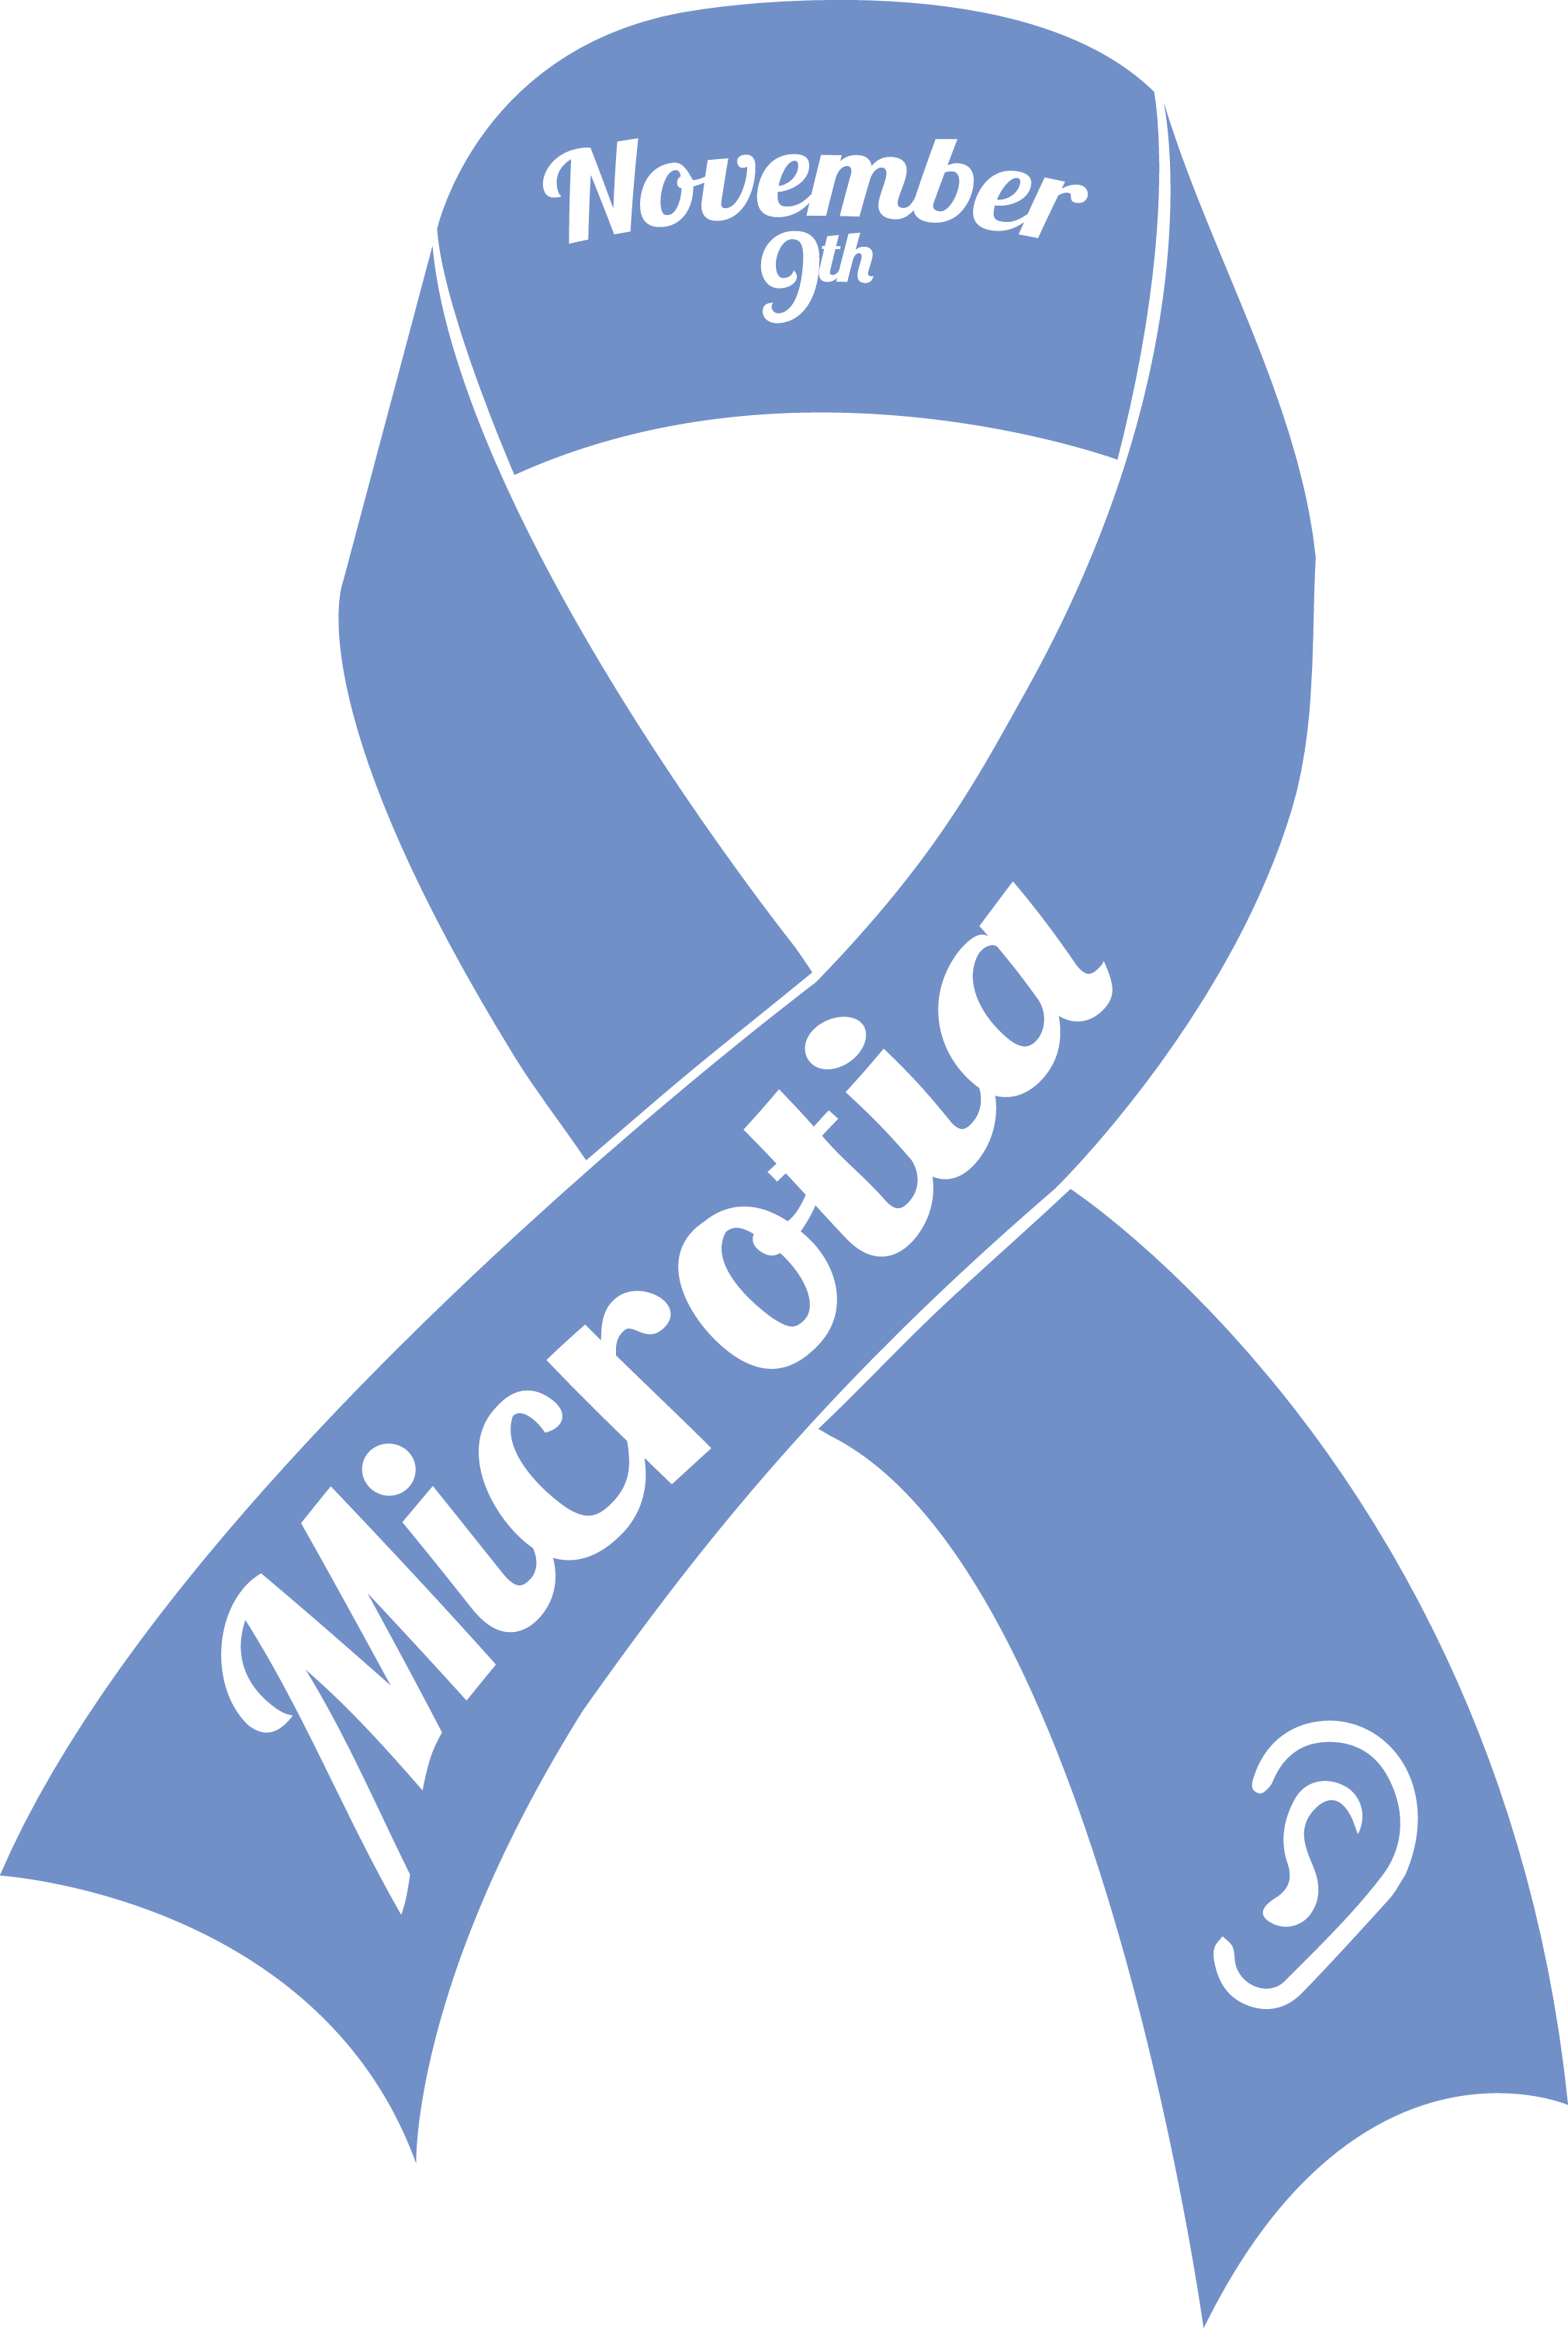 National Microtia Awareness Day logo